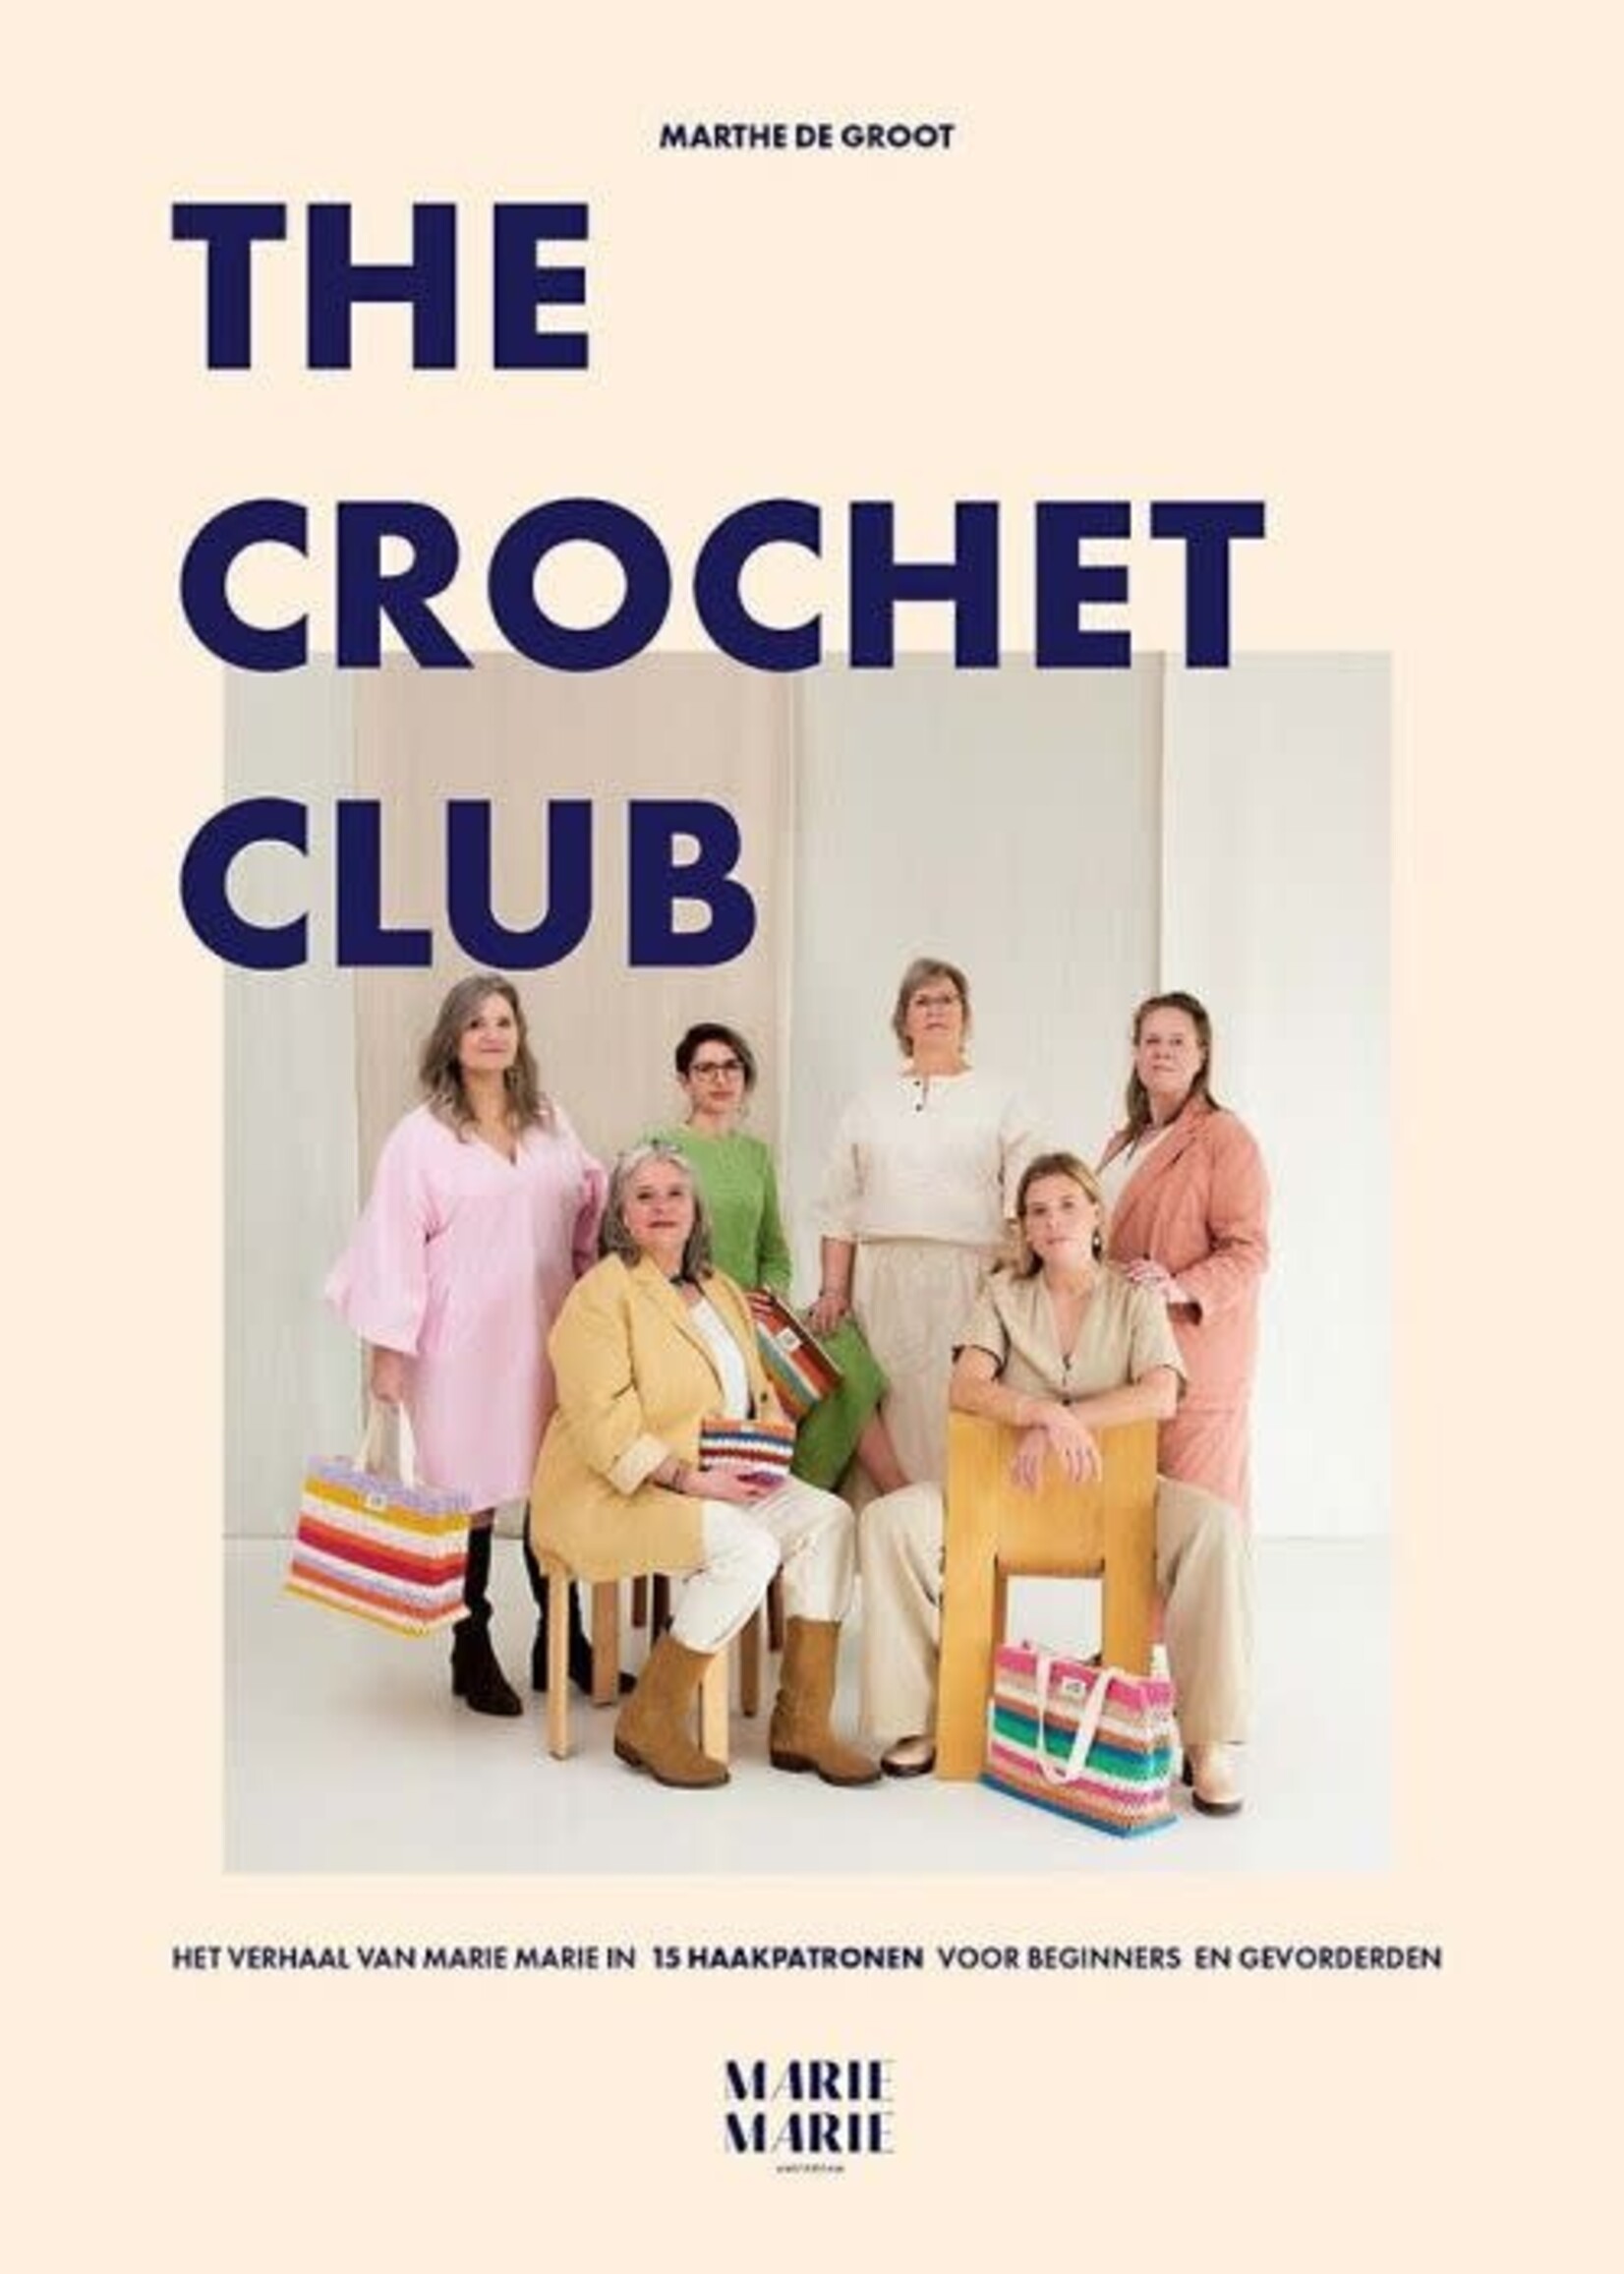 The Crochet club - Marthe de groot